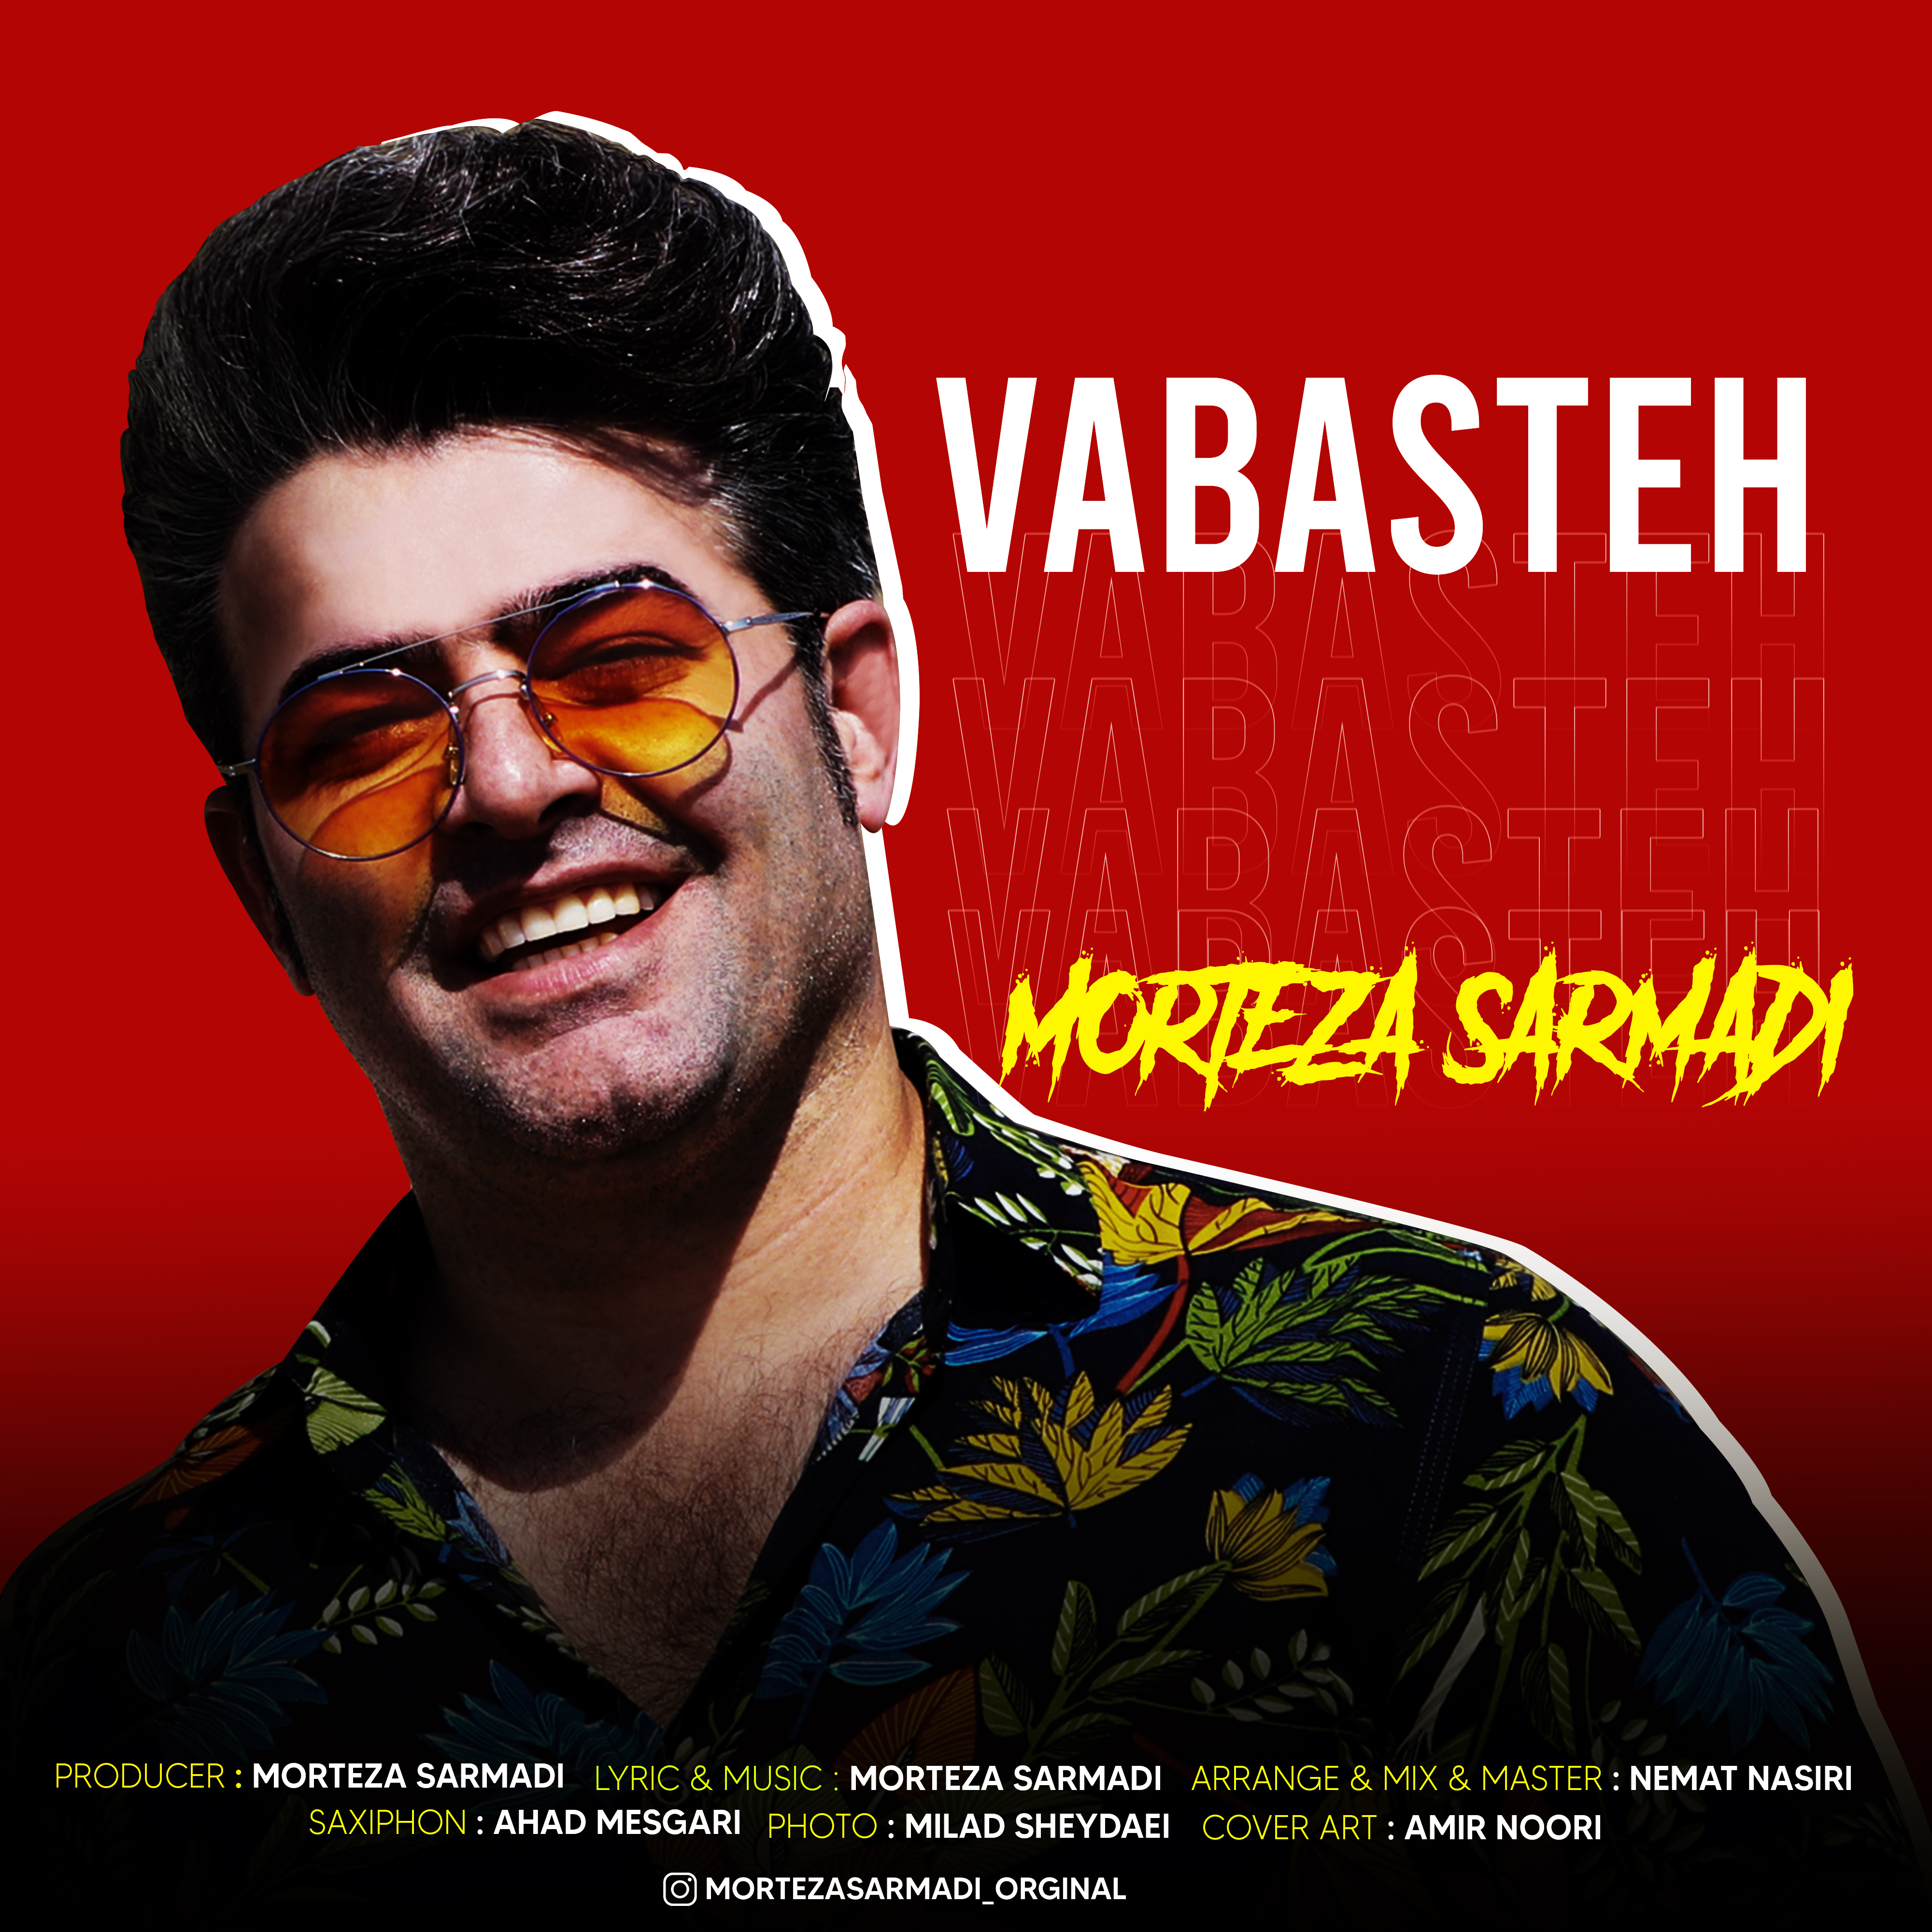  دانلود آهنگ جدید مرتضی سرمدی - وابسته | Download New Music By Morteza Sarmadi - Vabasteh